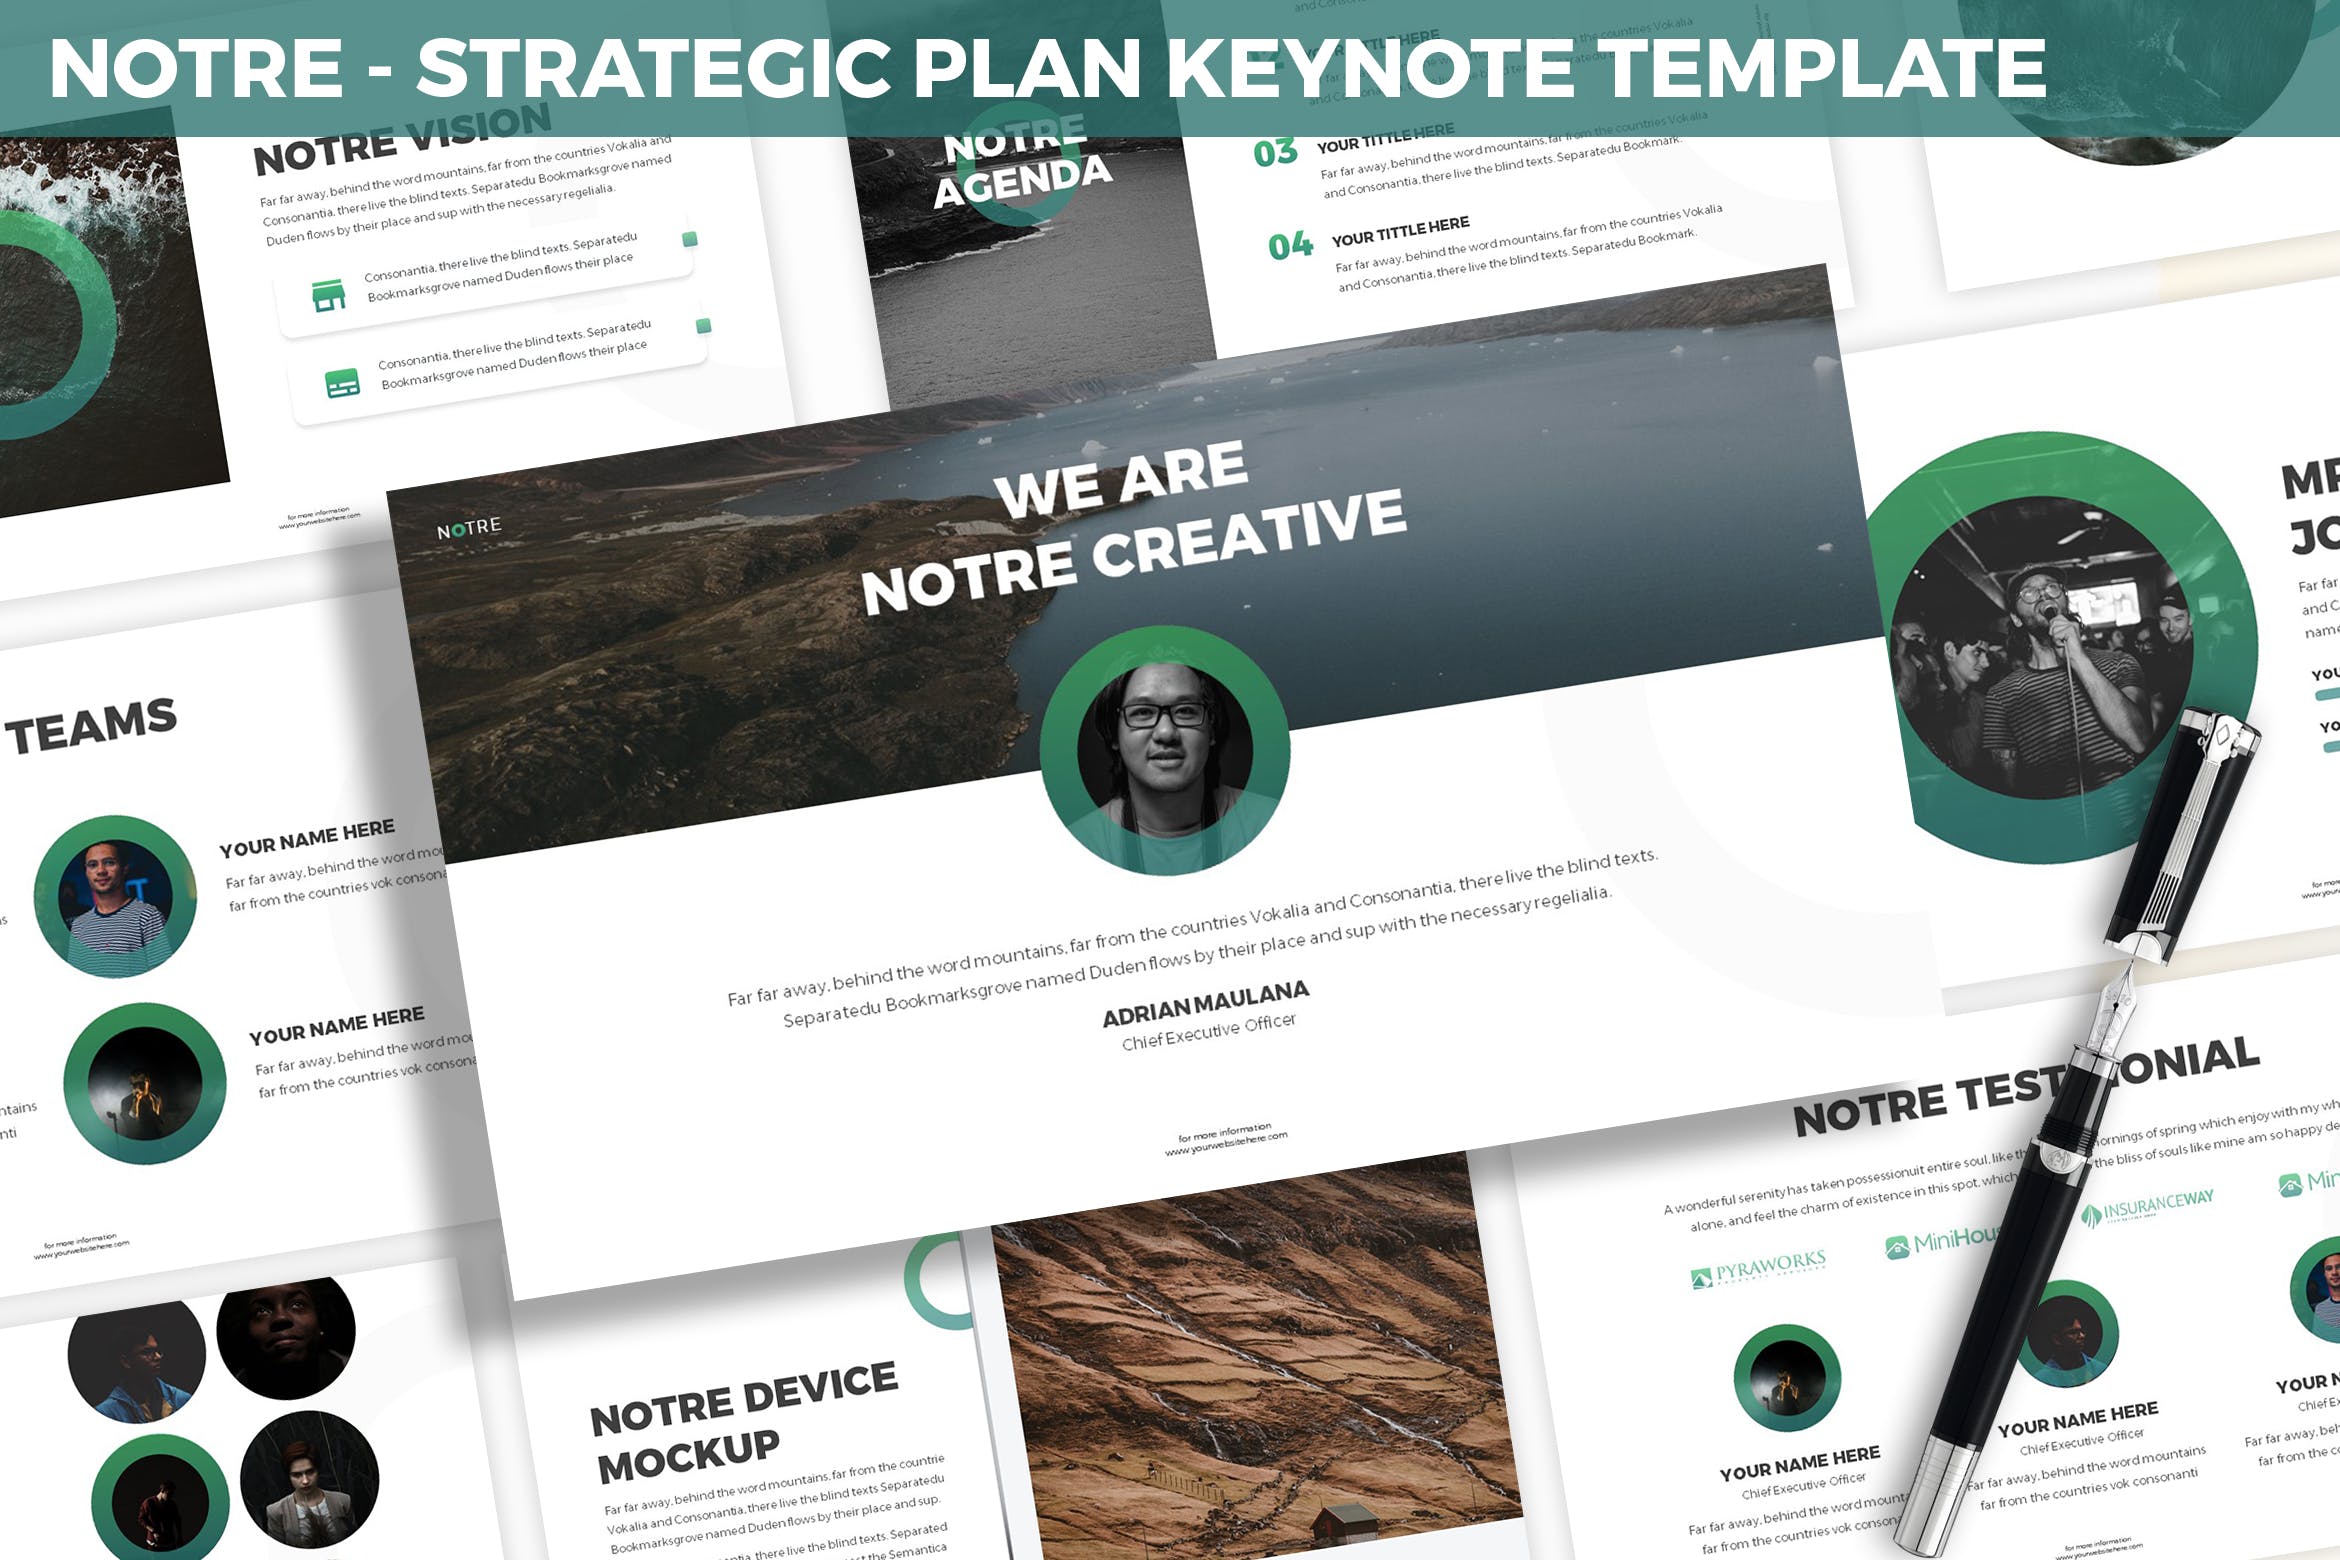 市场规划/项目计划主题16设计素材网精选Keynote模板模板 Notre – Strategic Plan Keynote Template插图